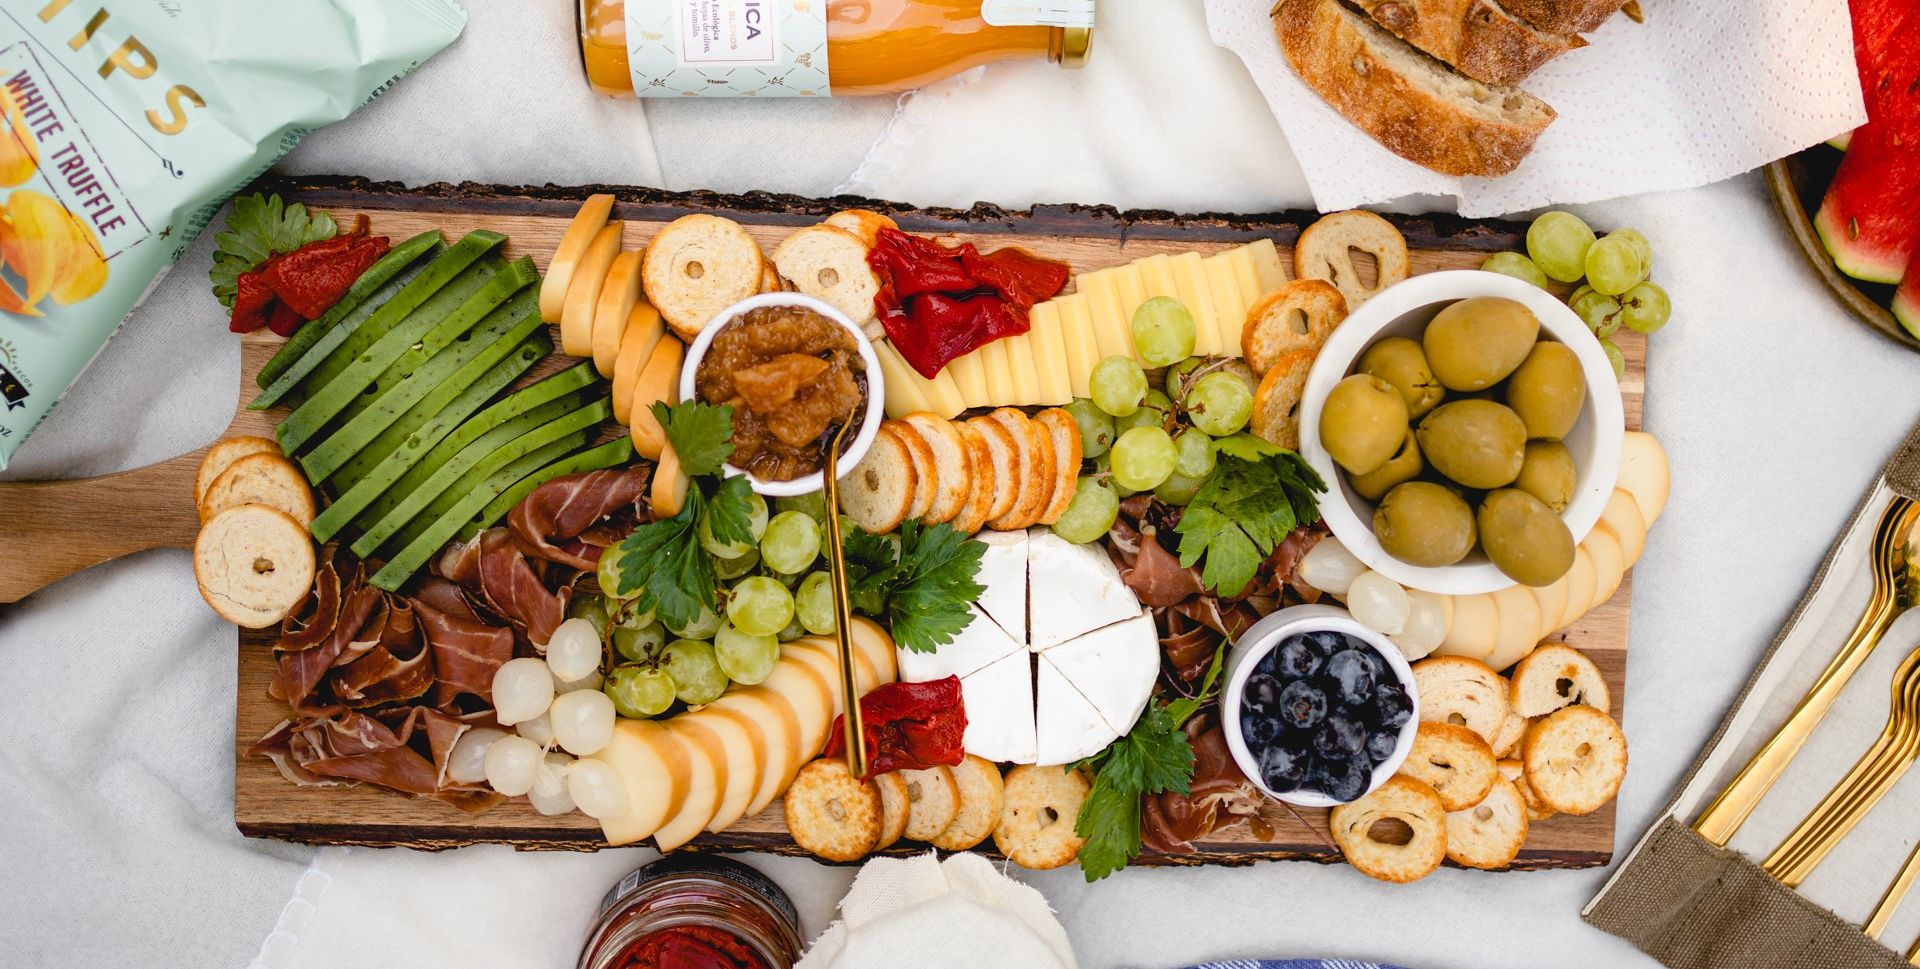 Návod na piknik podle nejlepších českých foodblogerů